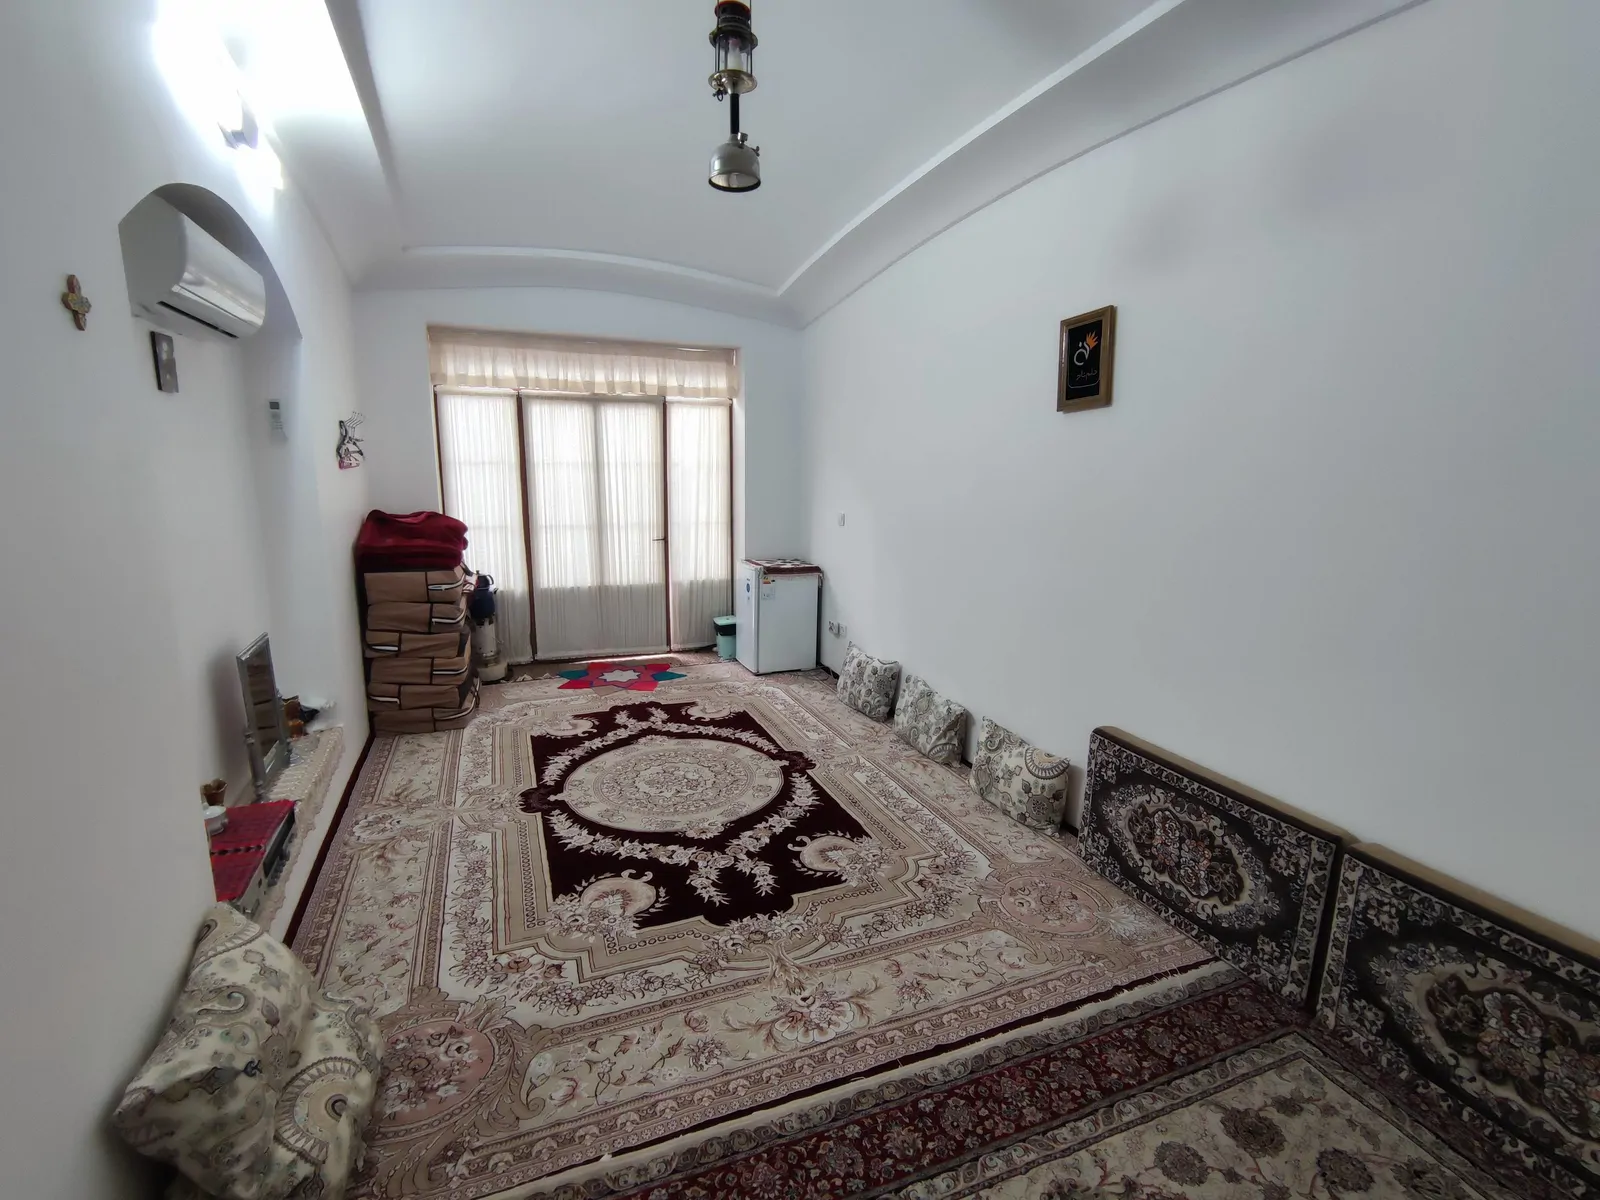 اقامتگاه بوم‌گردی خانم تاج نوش آباد (اتاق گندم)،آران و بیدگل - اجاره اقامتگاه بوم‌گردی در آران و بیدگل - اتاقک